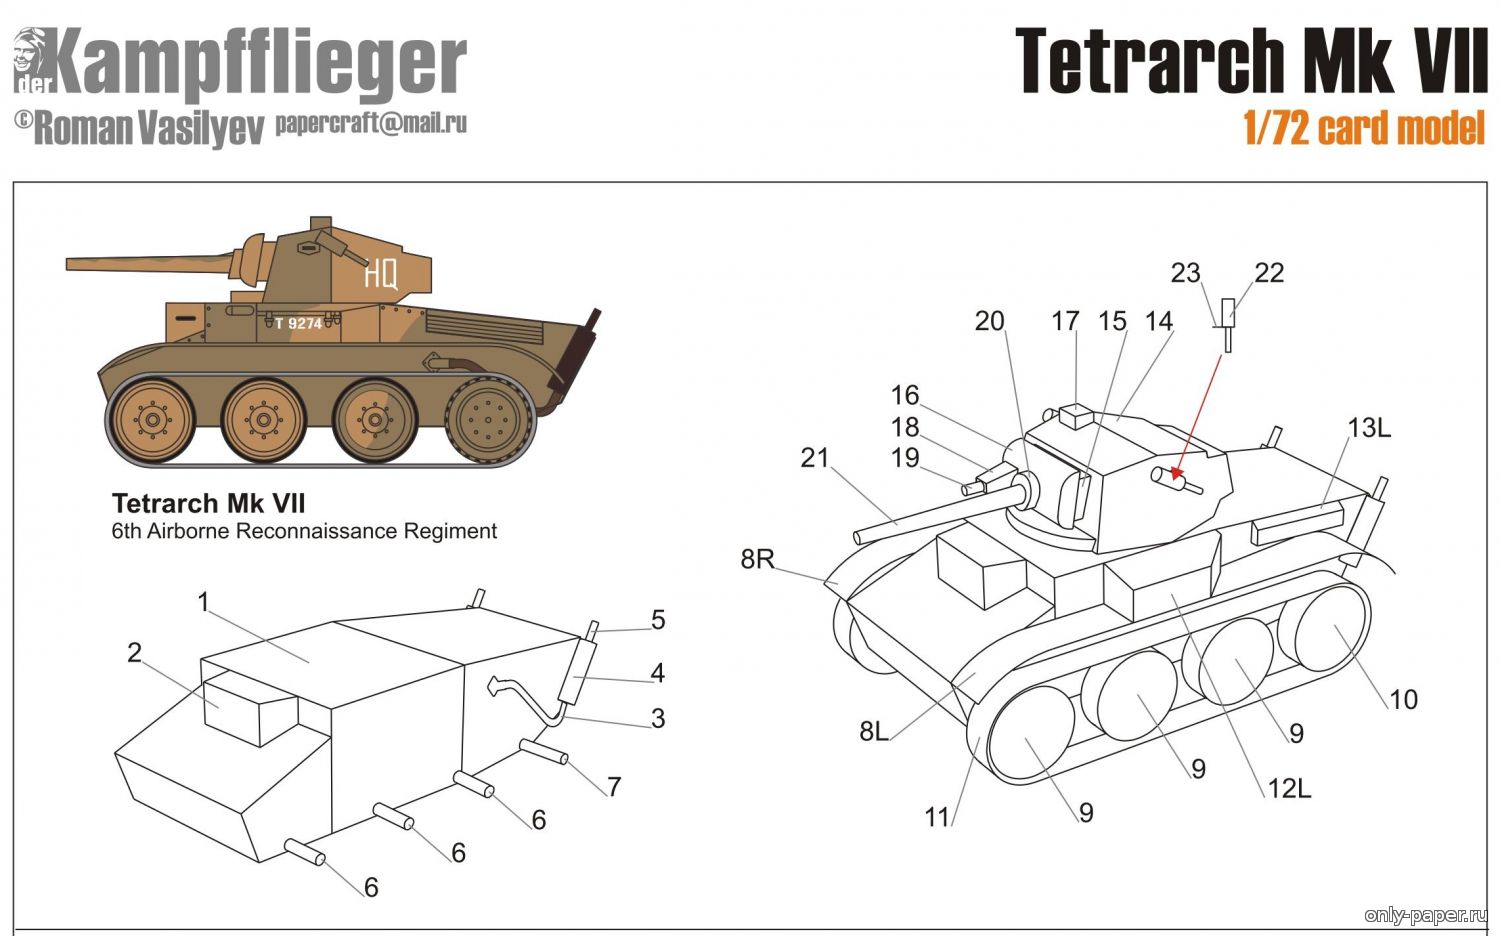 Как сделать танк из картона схема. Чертеж танка т34 из картона модель. Чертеж макета танка т-34 из картона. Модели танков для сборки чертежи. Моделирование танков из бумаги чертежи.